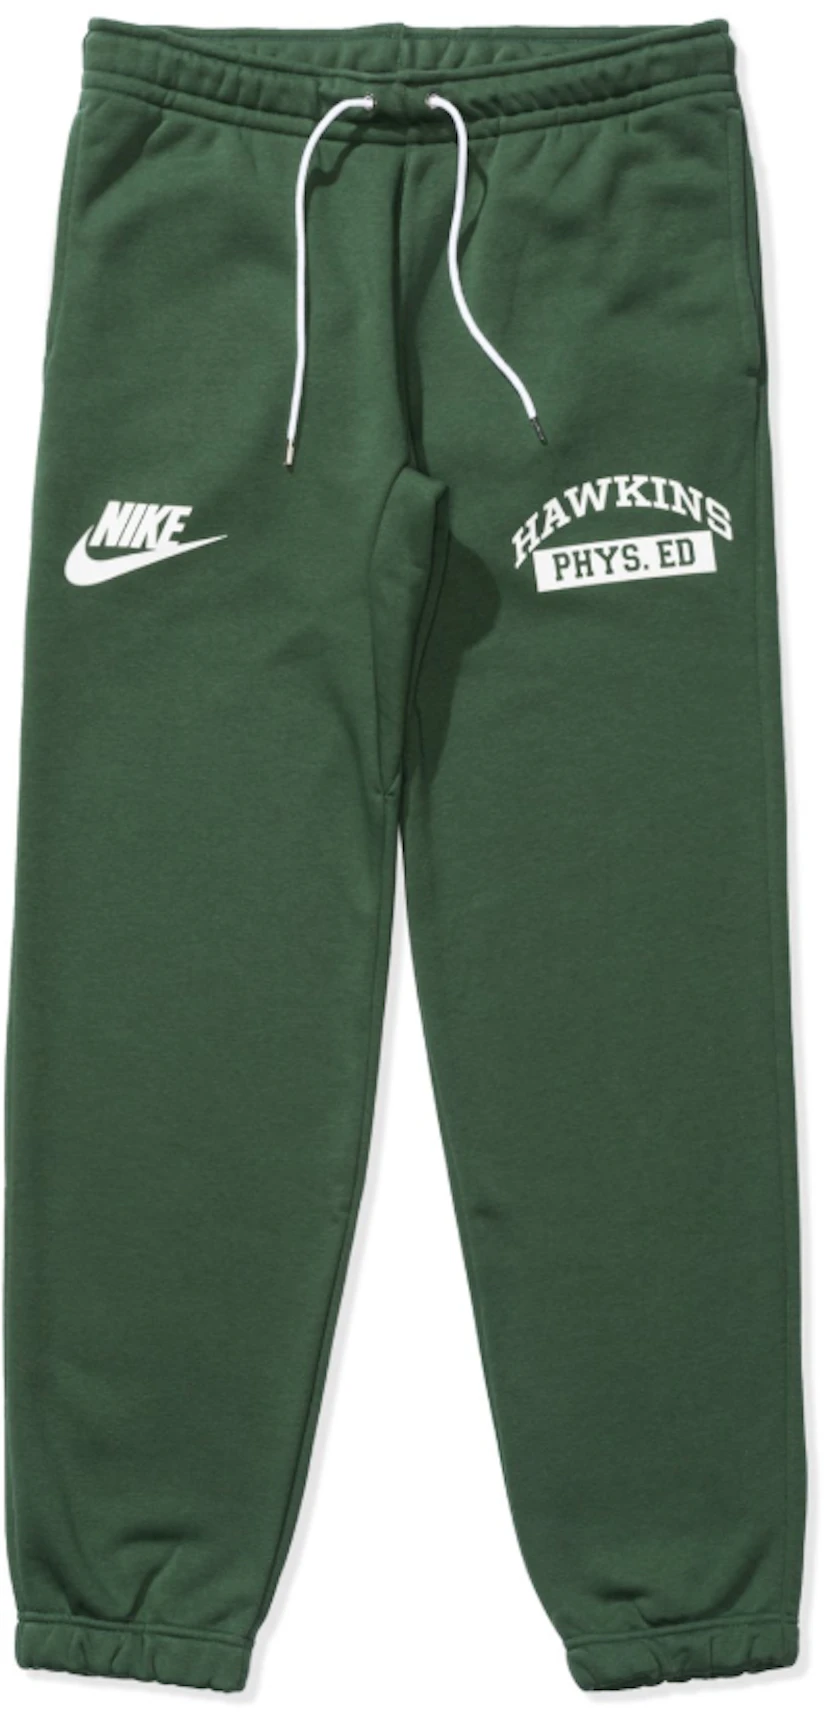 vertegenwoordiger vals spier Nike x Stranger Things Hawkins High Sweatpant Green - SS19 - US